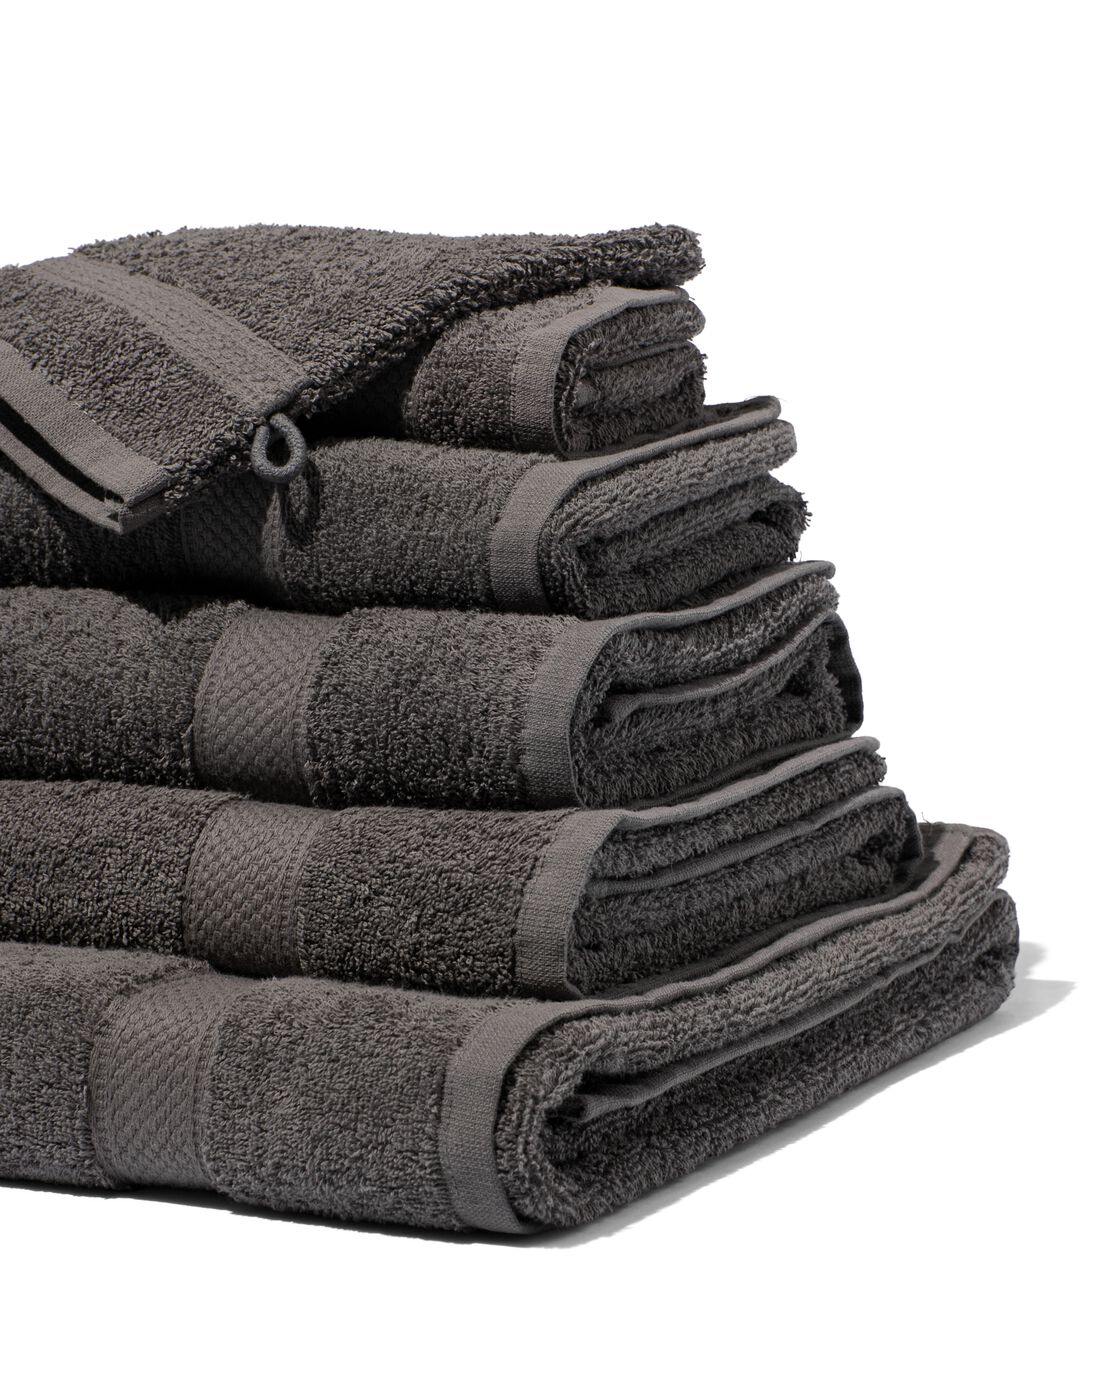 HEMA Handdoeken Zware Kwaliteit Donkergrijs (donkergrijs)